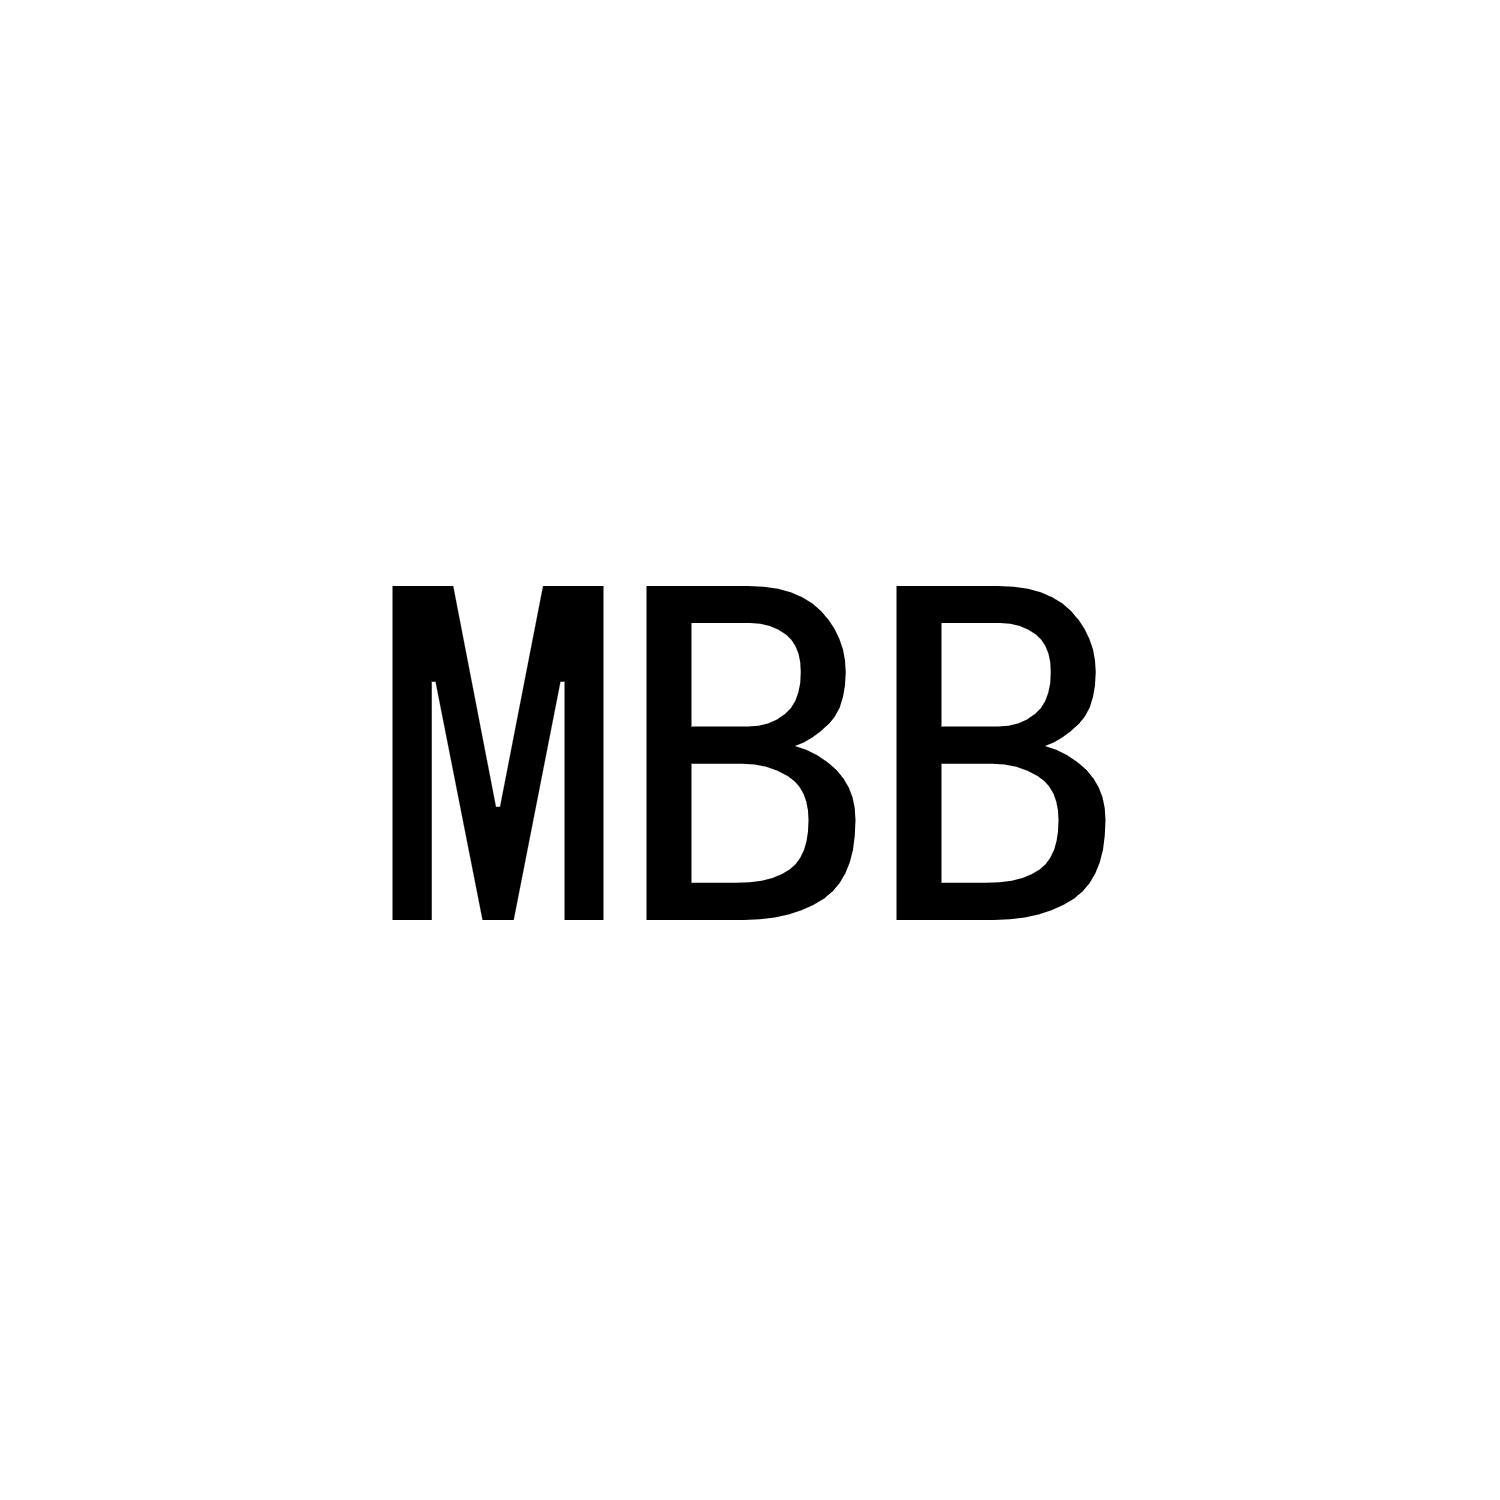 MBB